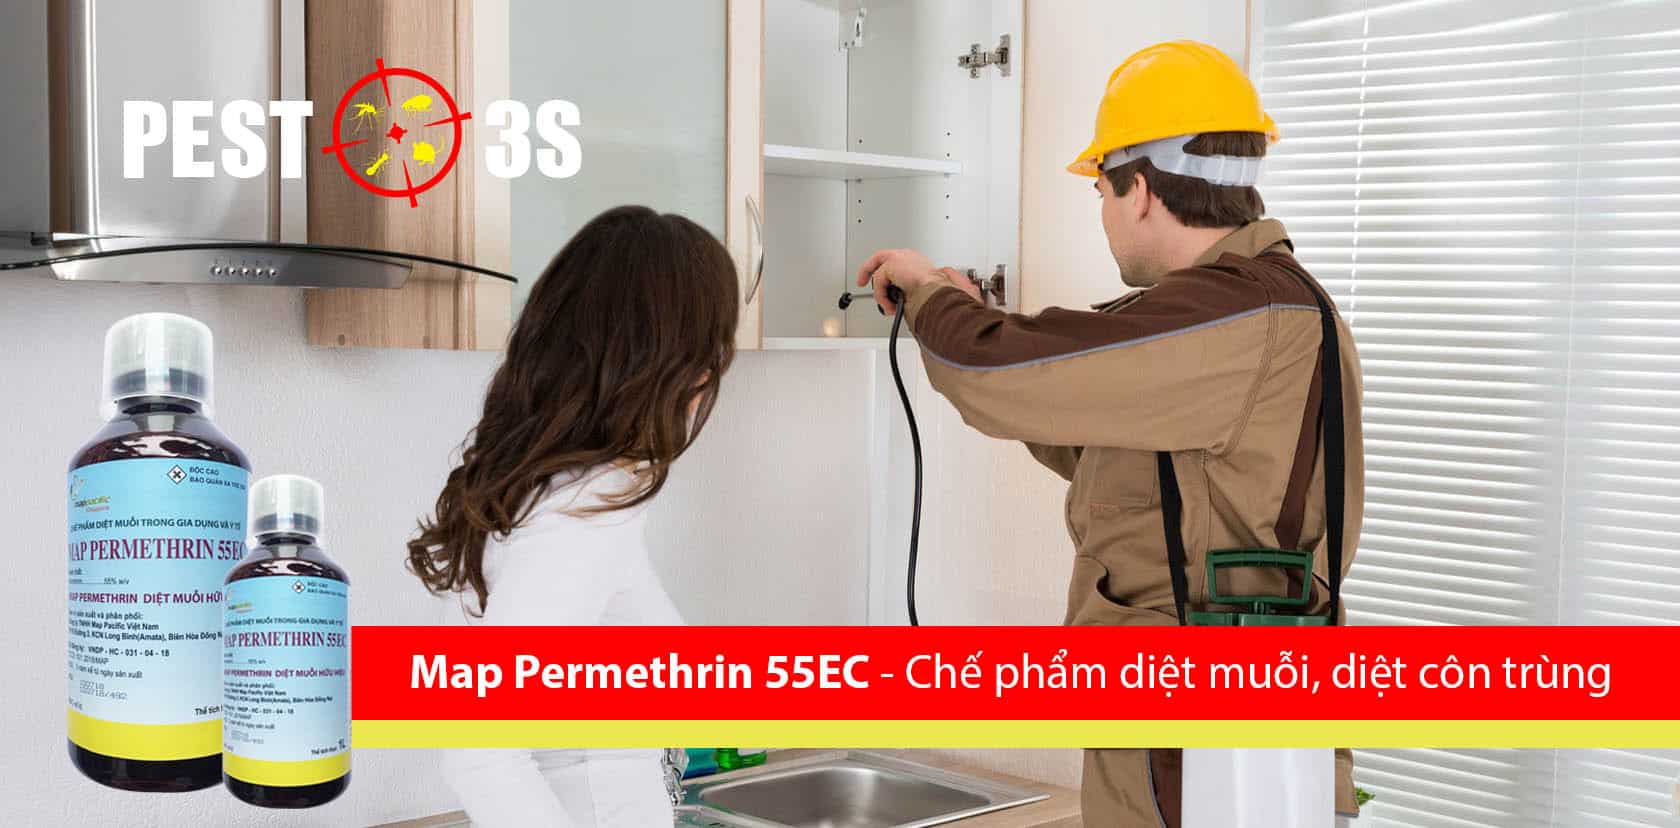 Phun thuốc diệt muỗi Map Permethrin 55EC tại nhà hiệu quả